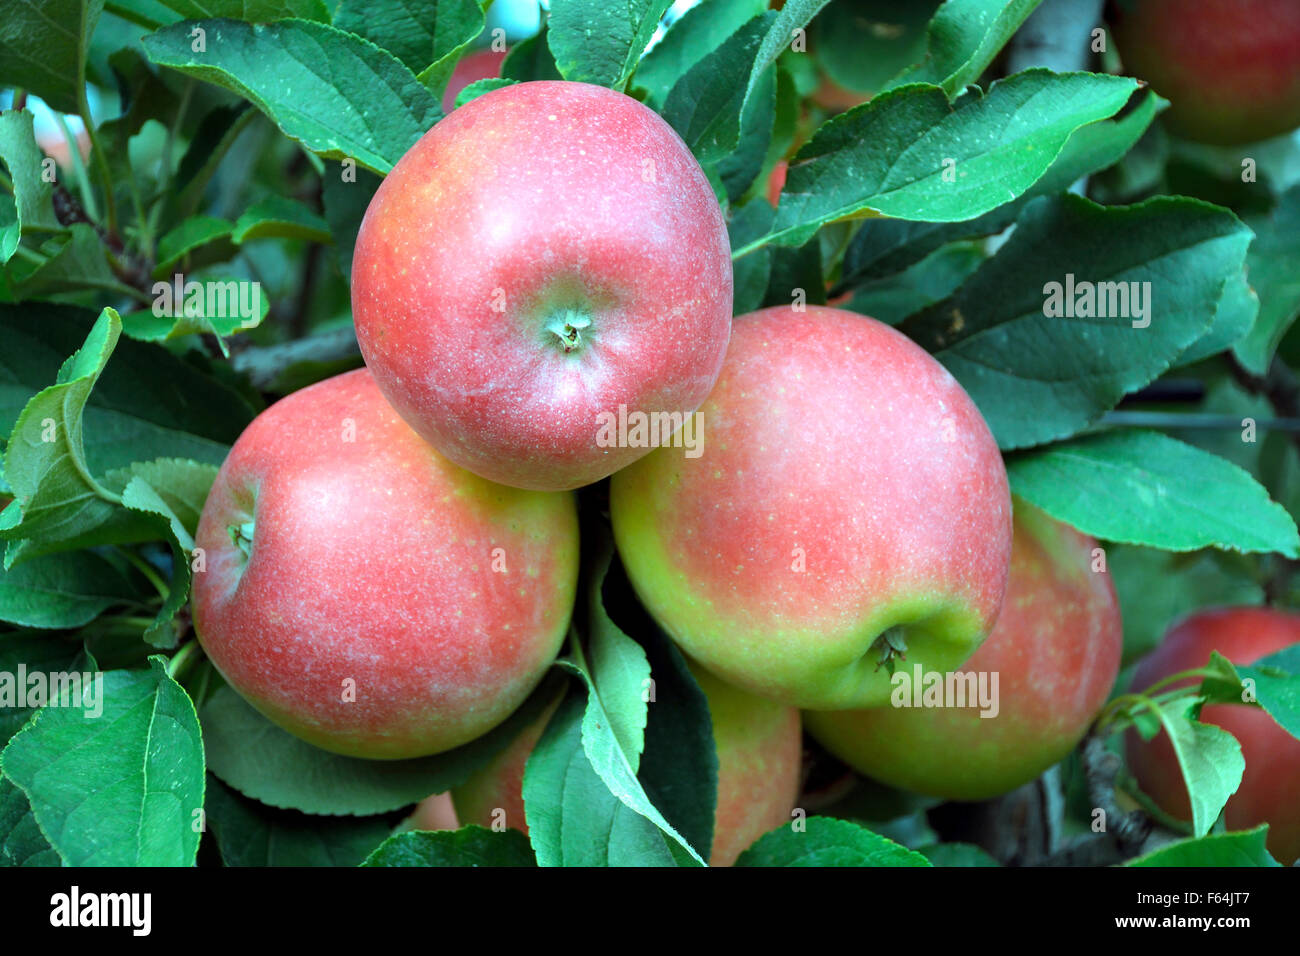 La récolte des pommes mûres de fruits de la superficie cultivable du Tyrol du Sud - Italie. Banque D'Images